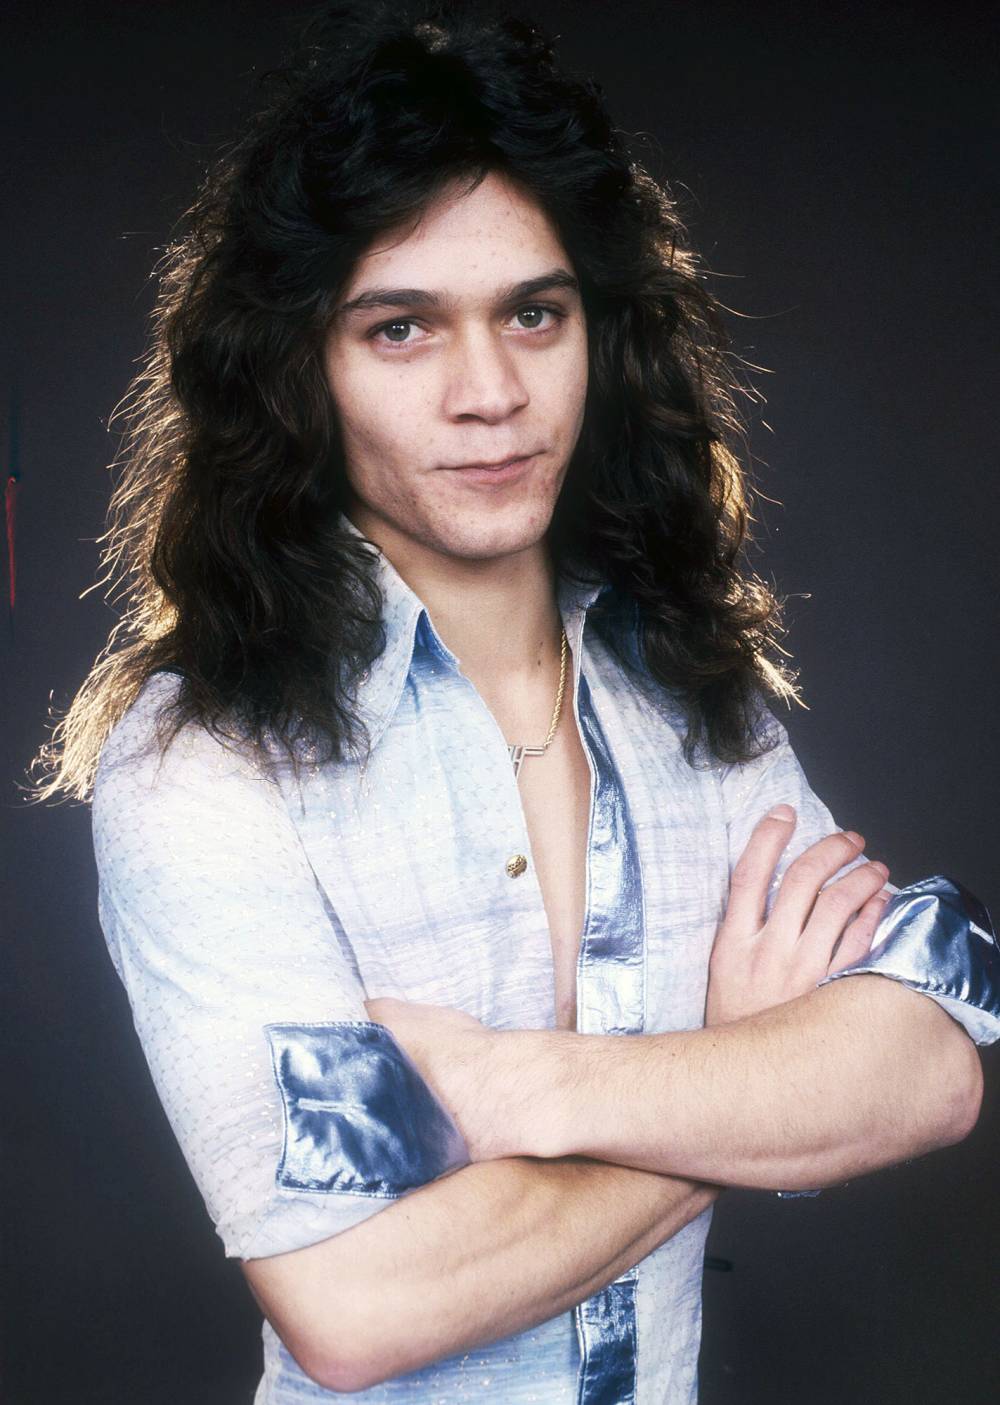 Eddie Van Halen Dead